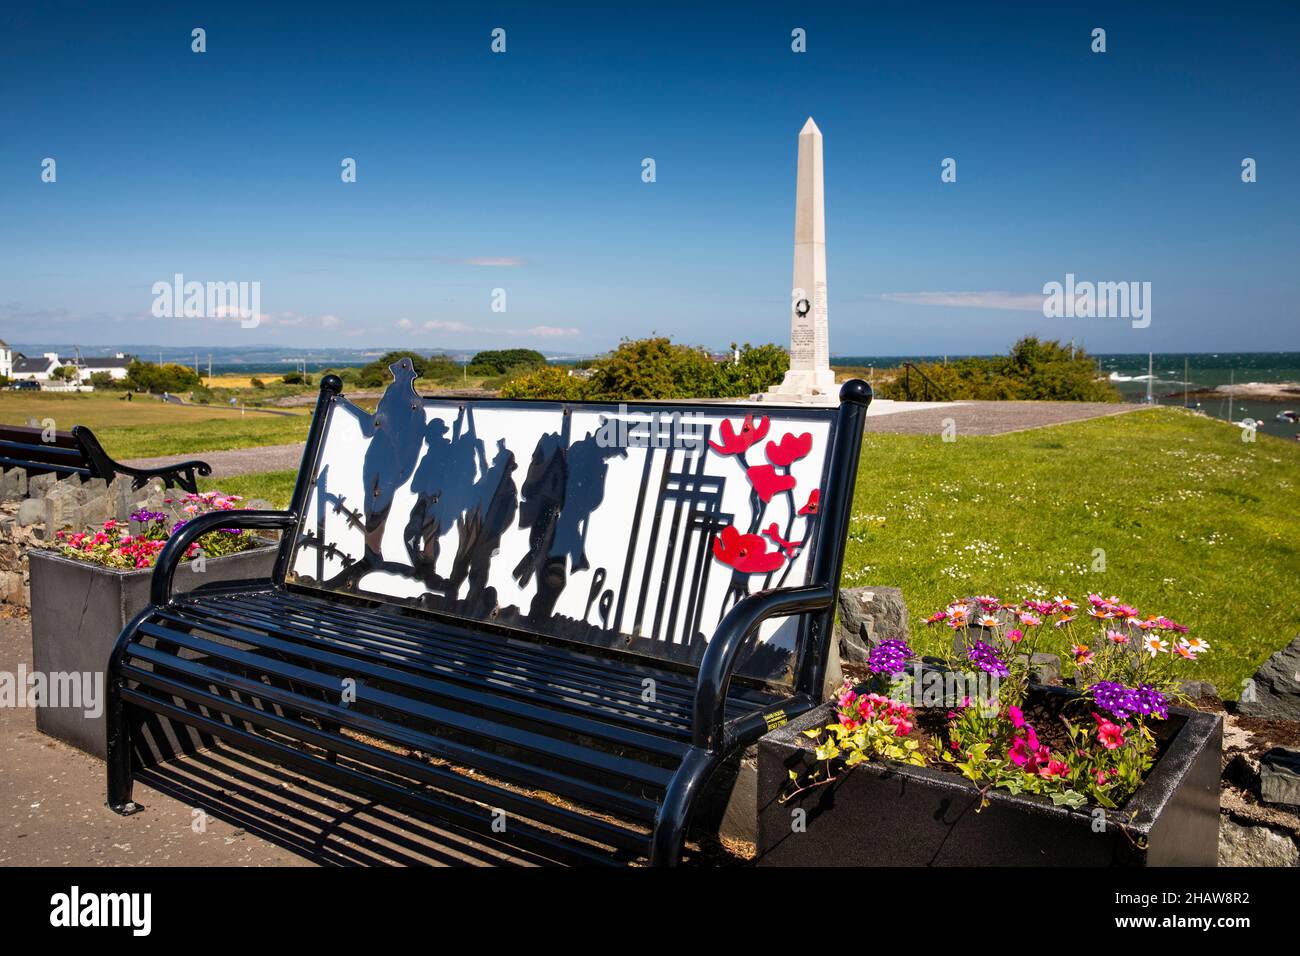 Reino Unido Irlanda del Norte, Co Down, Groomsport, frente al mar, Banco Memorial de Guerra Foto de stock